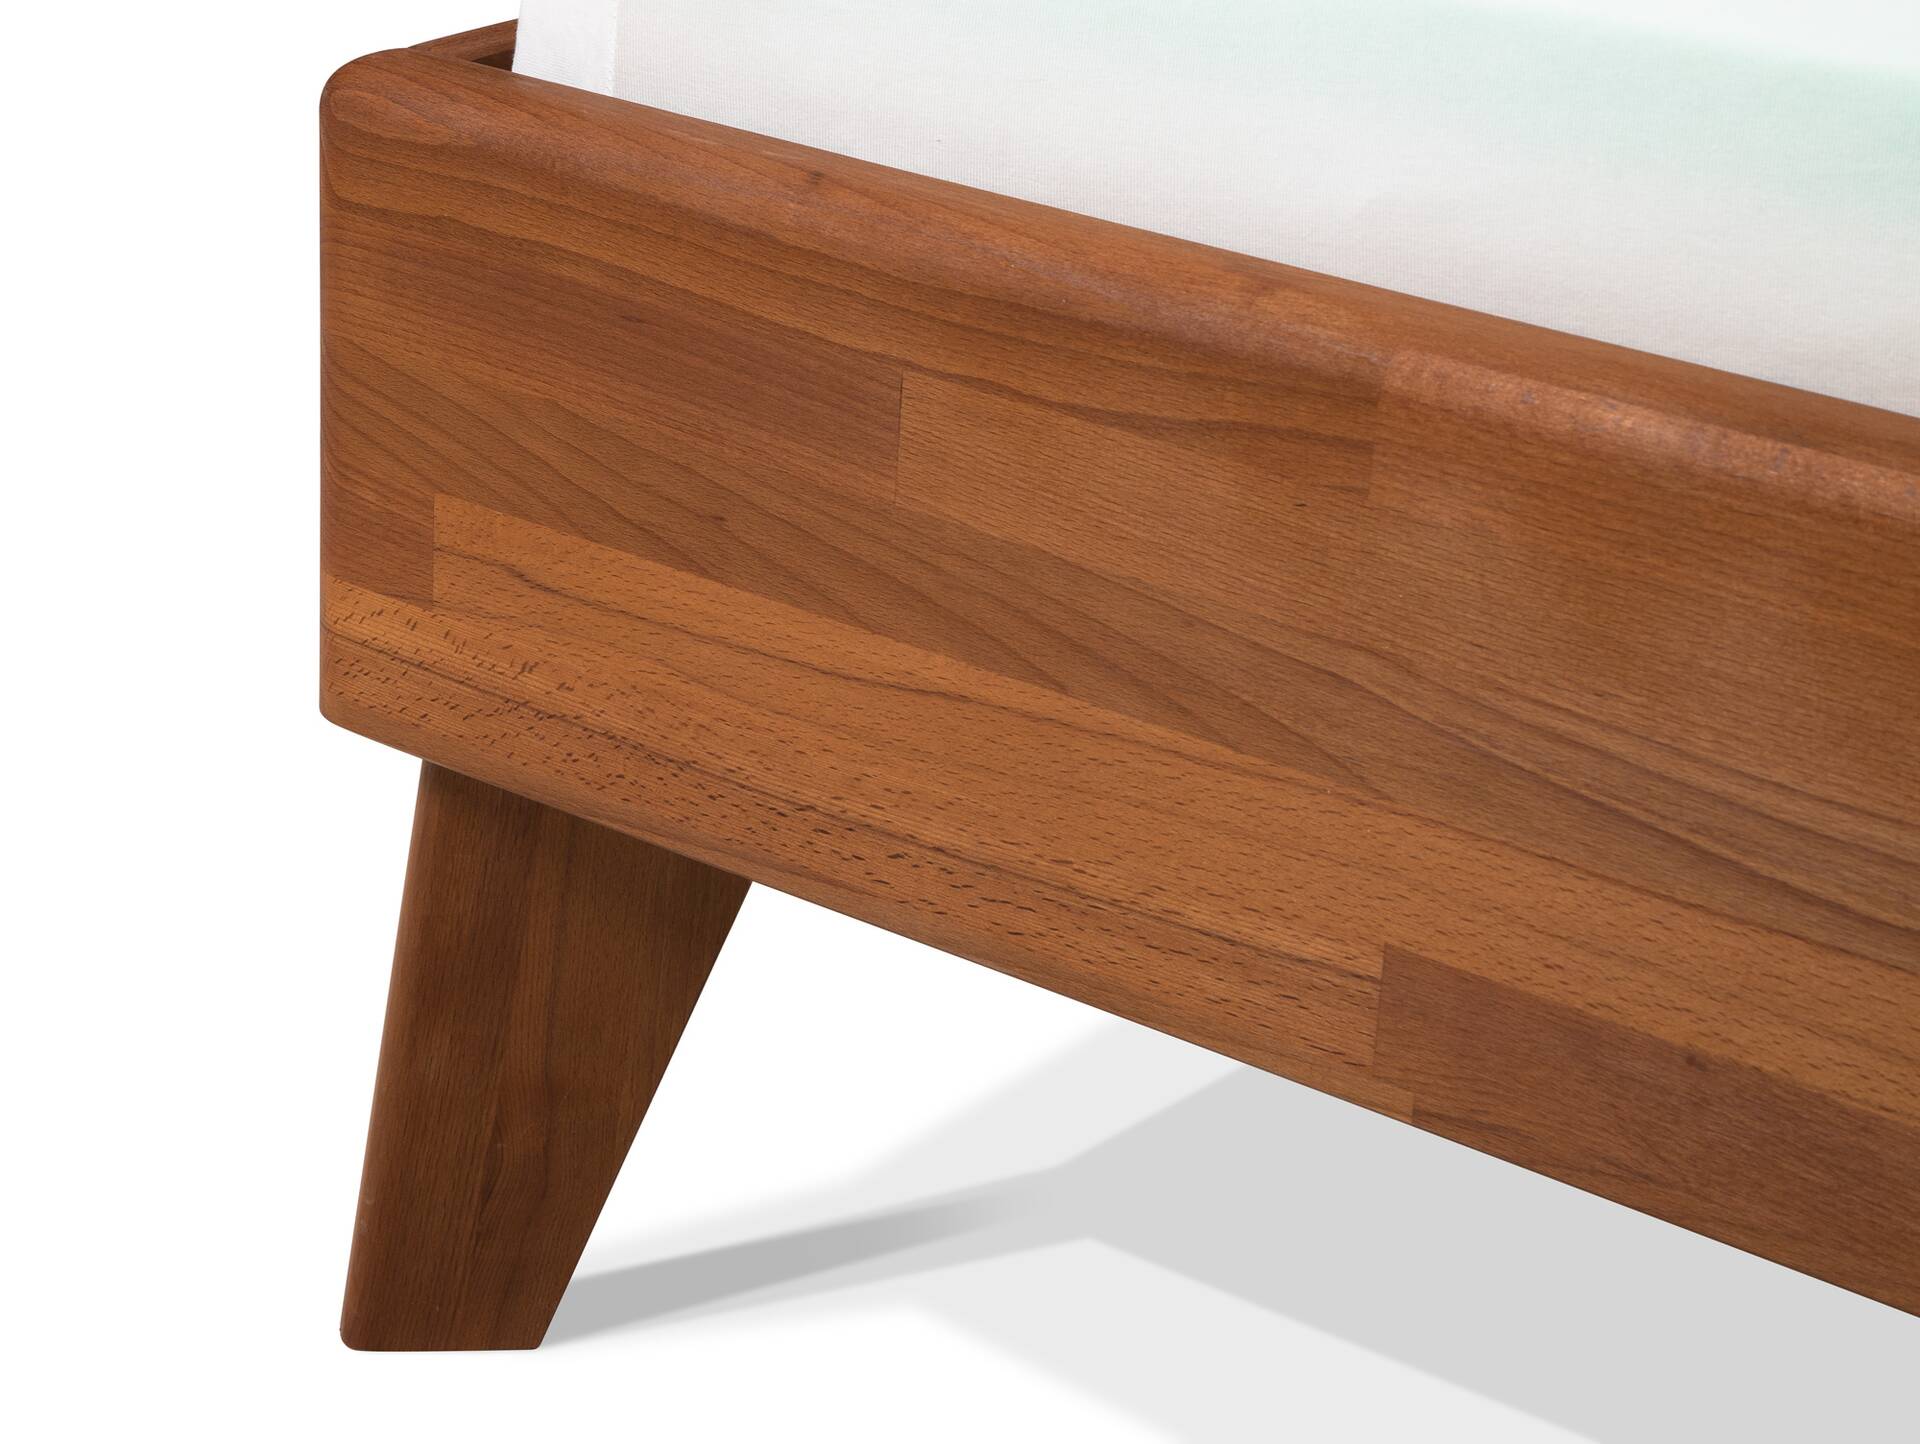 CALIDO 4-Fuß-Bett, Material Massivholz, mit/ohne Kopfteil 140 x 200 cm | Buche nussbaumfarbig gedämpft | Standardhöhe | ohne Kopfteil